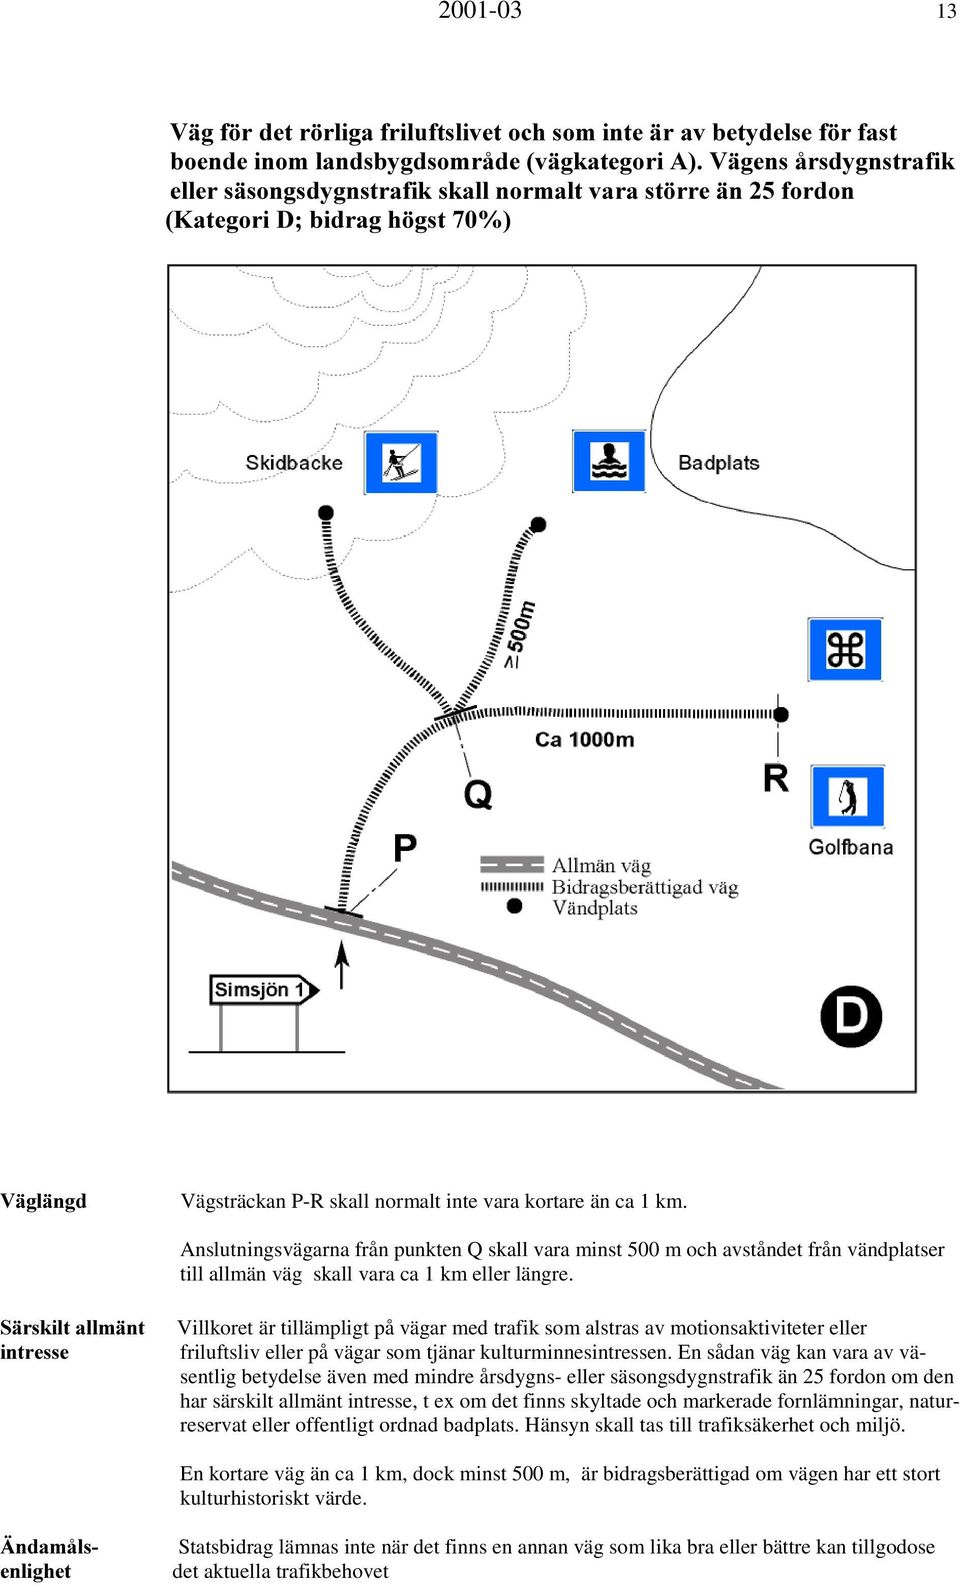 Anslutningsvägarna från punkten Q skall vara minst 500 m och avståndet från vändplatser till allmän väg skall vara ca 1 km eller längre.